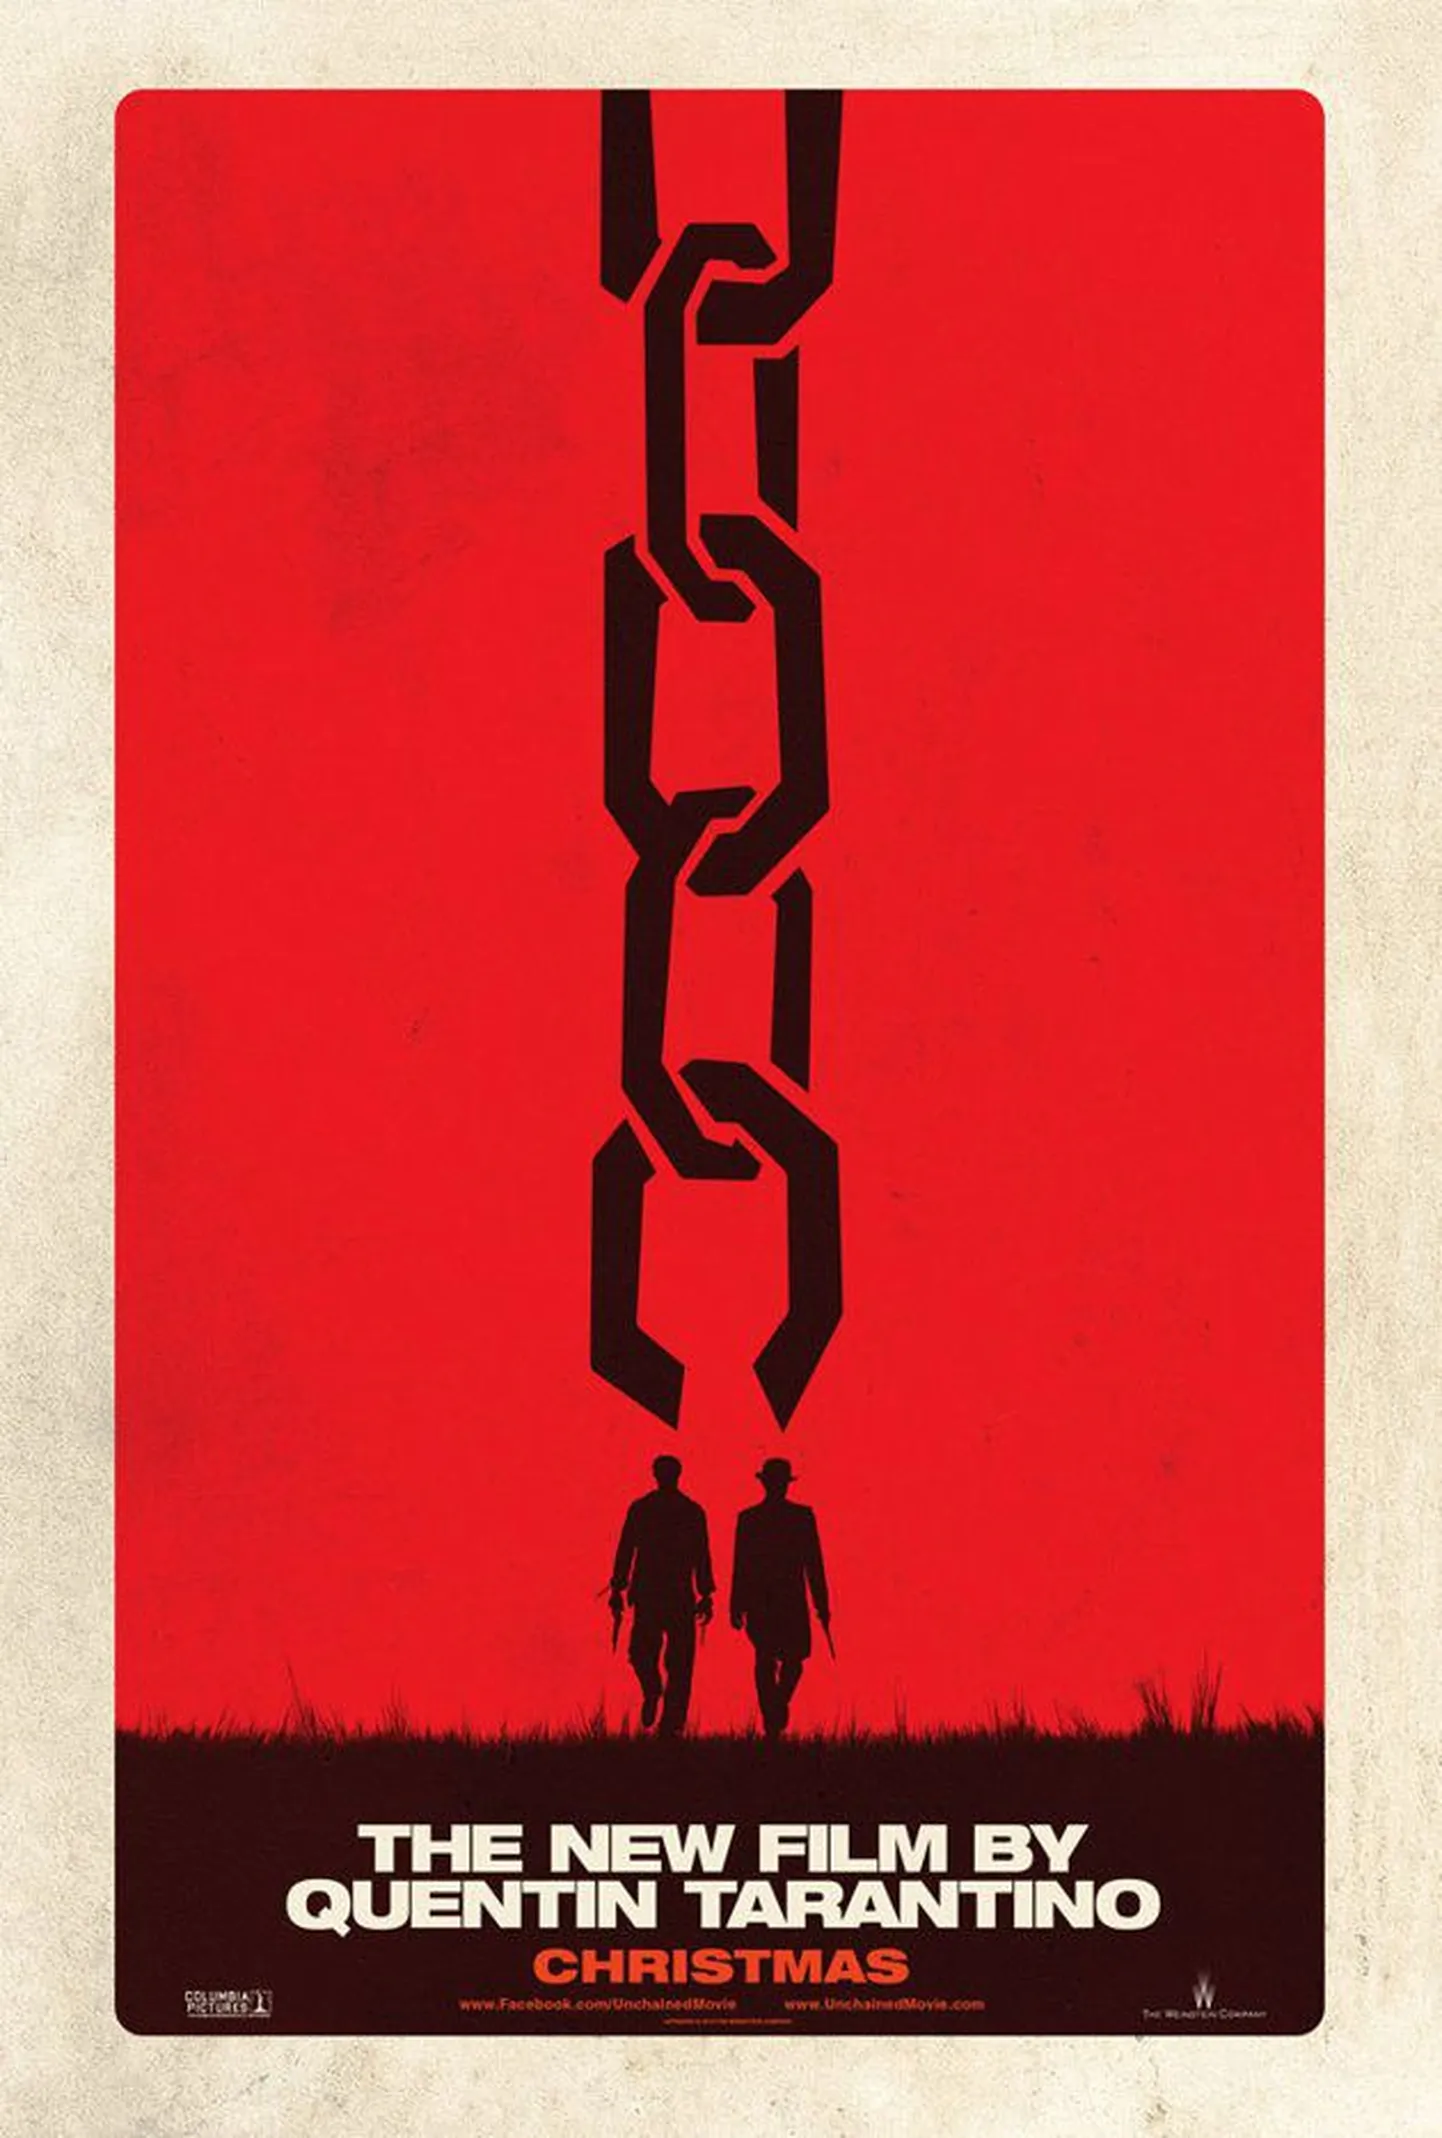 Постер к новому фильму Квентина Тарантино "Освобожденный Джанго".